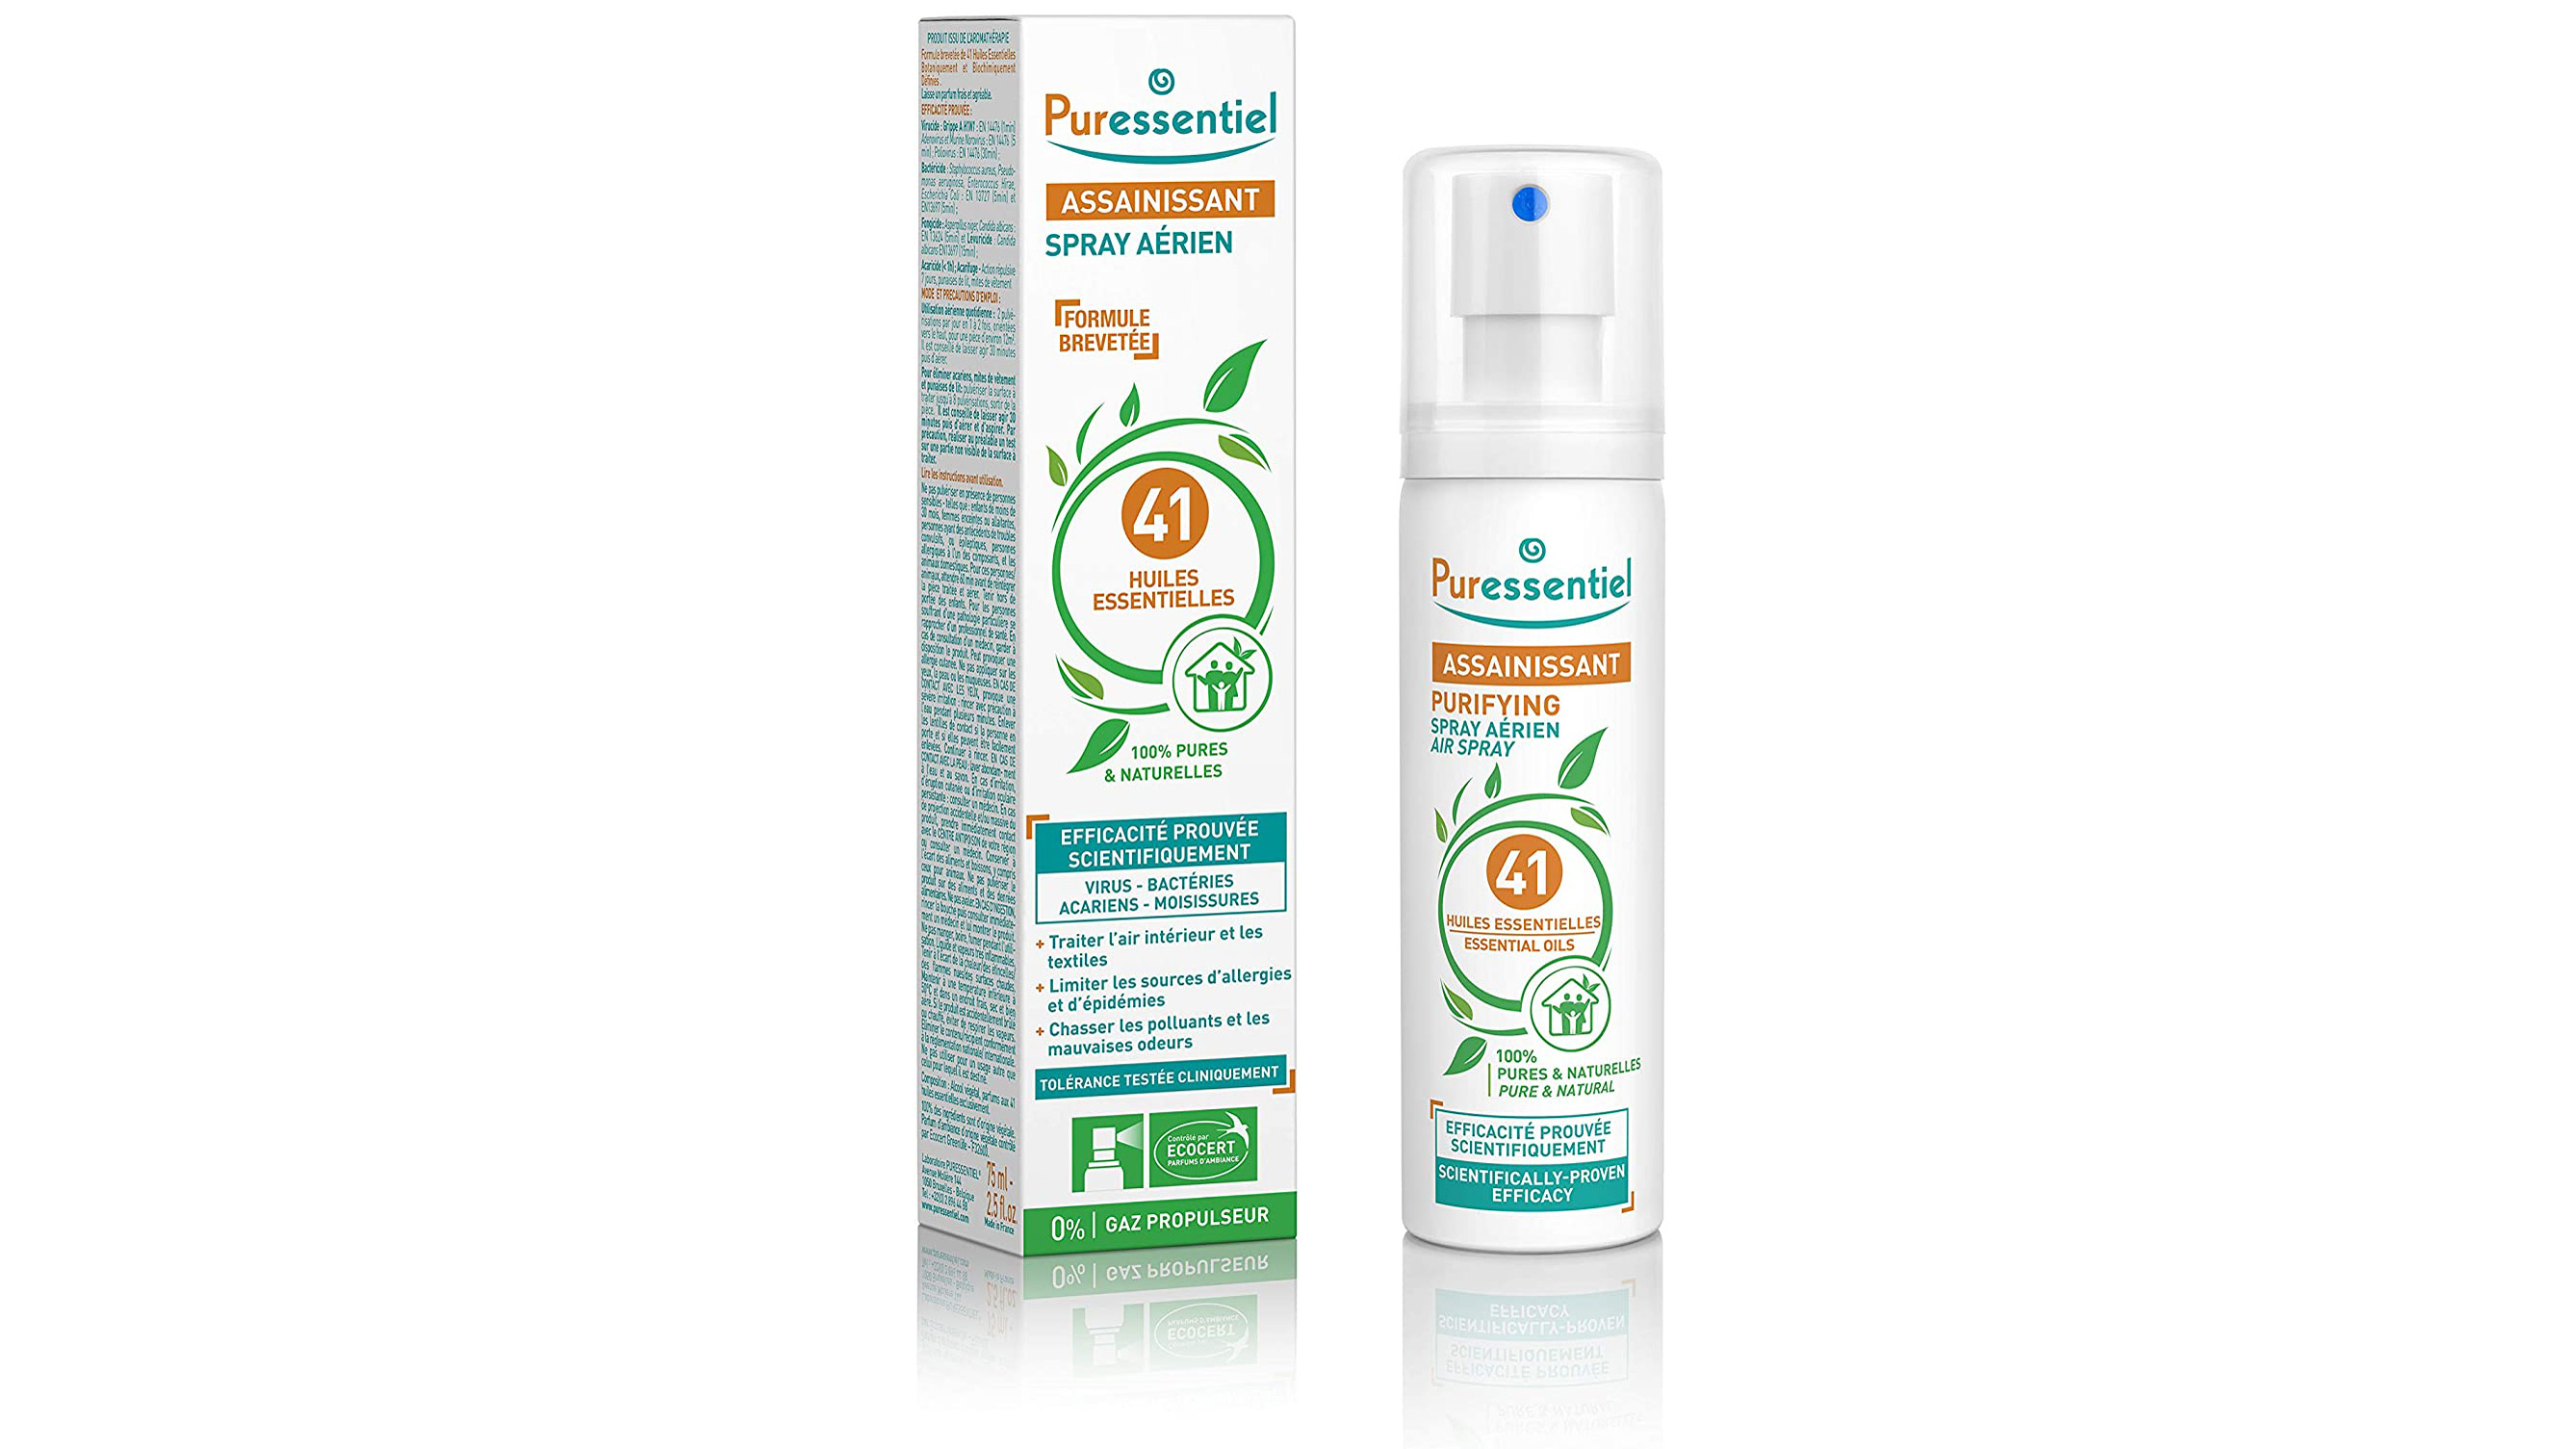 Best air freshener: Puressentiel Purifying Air Spray